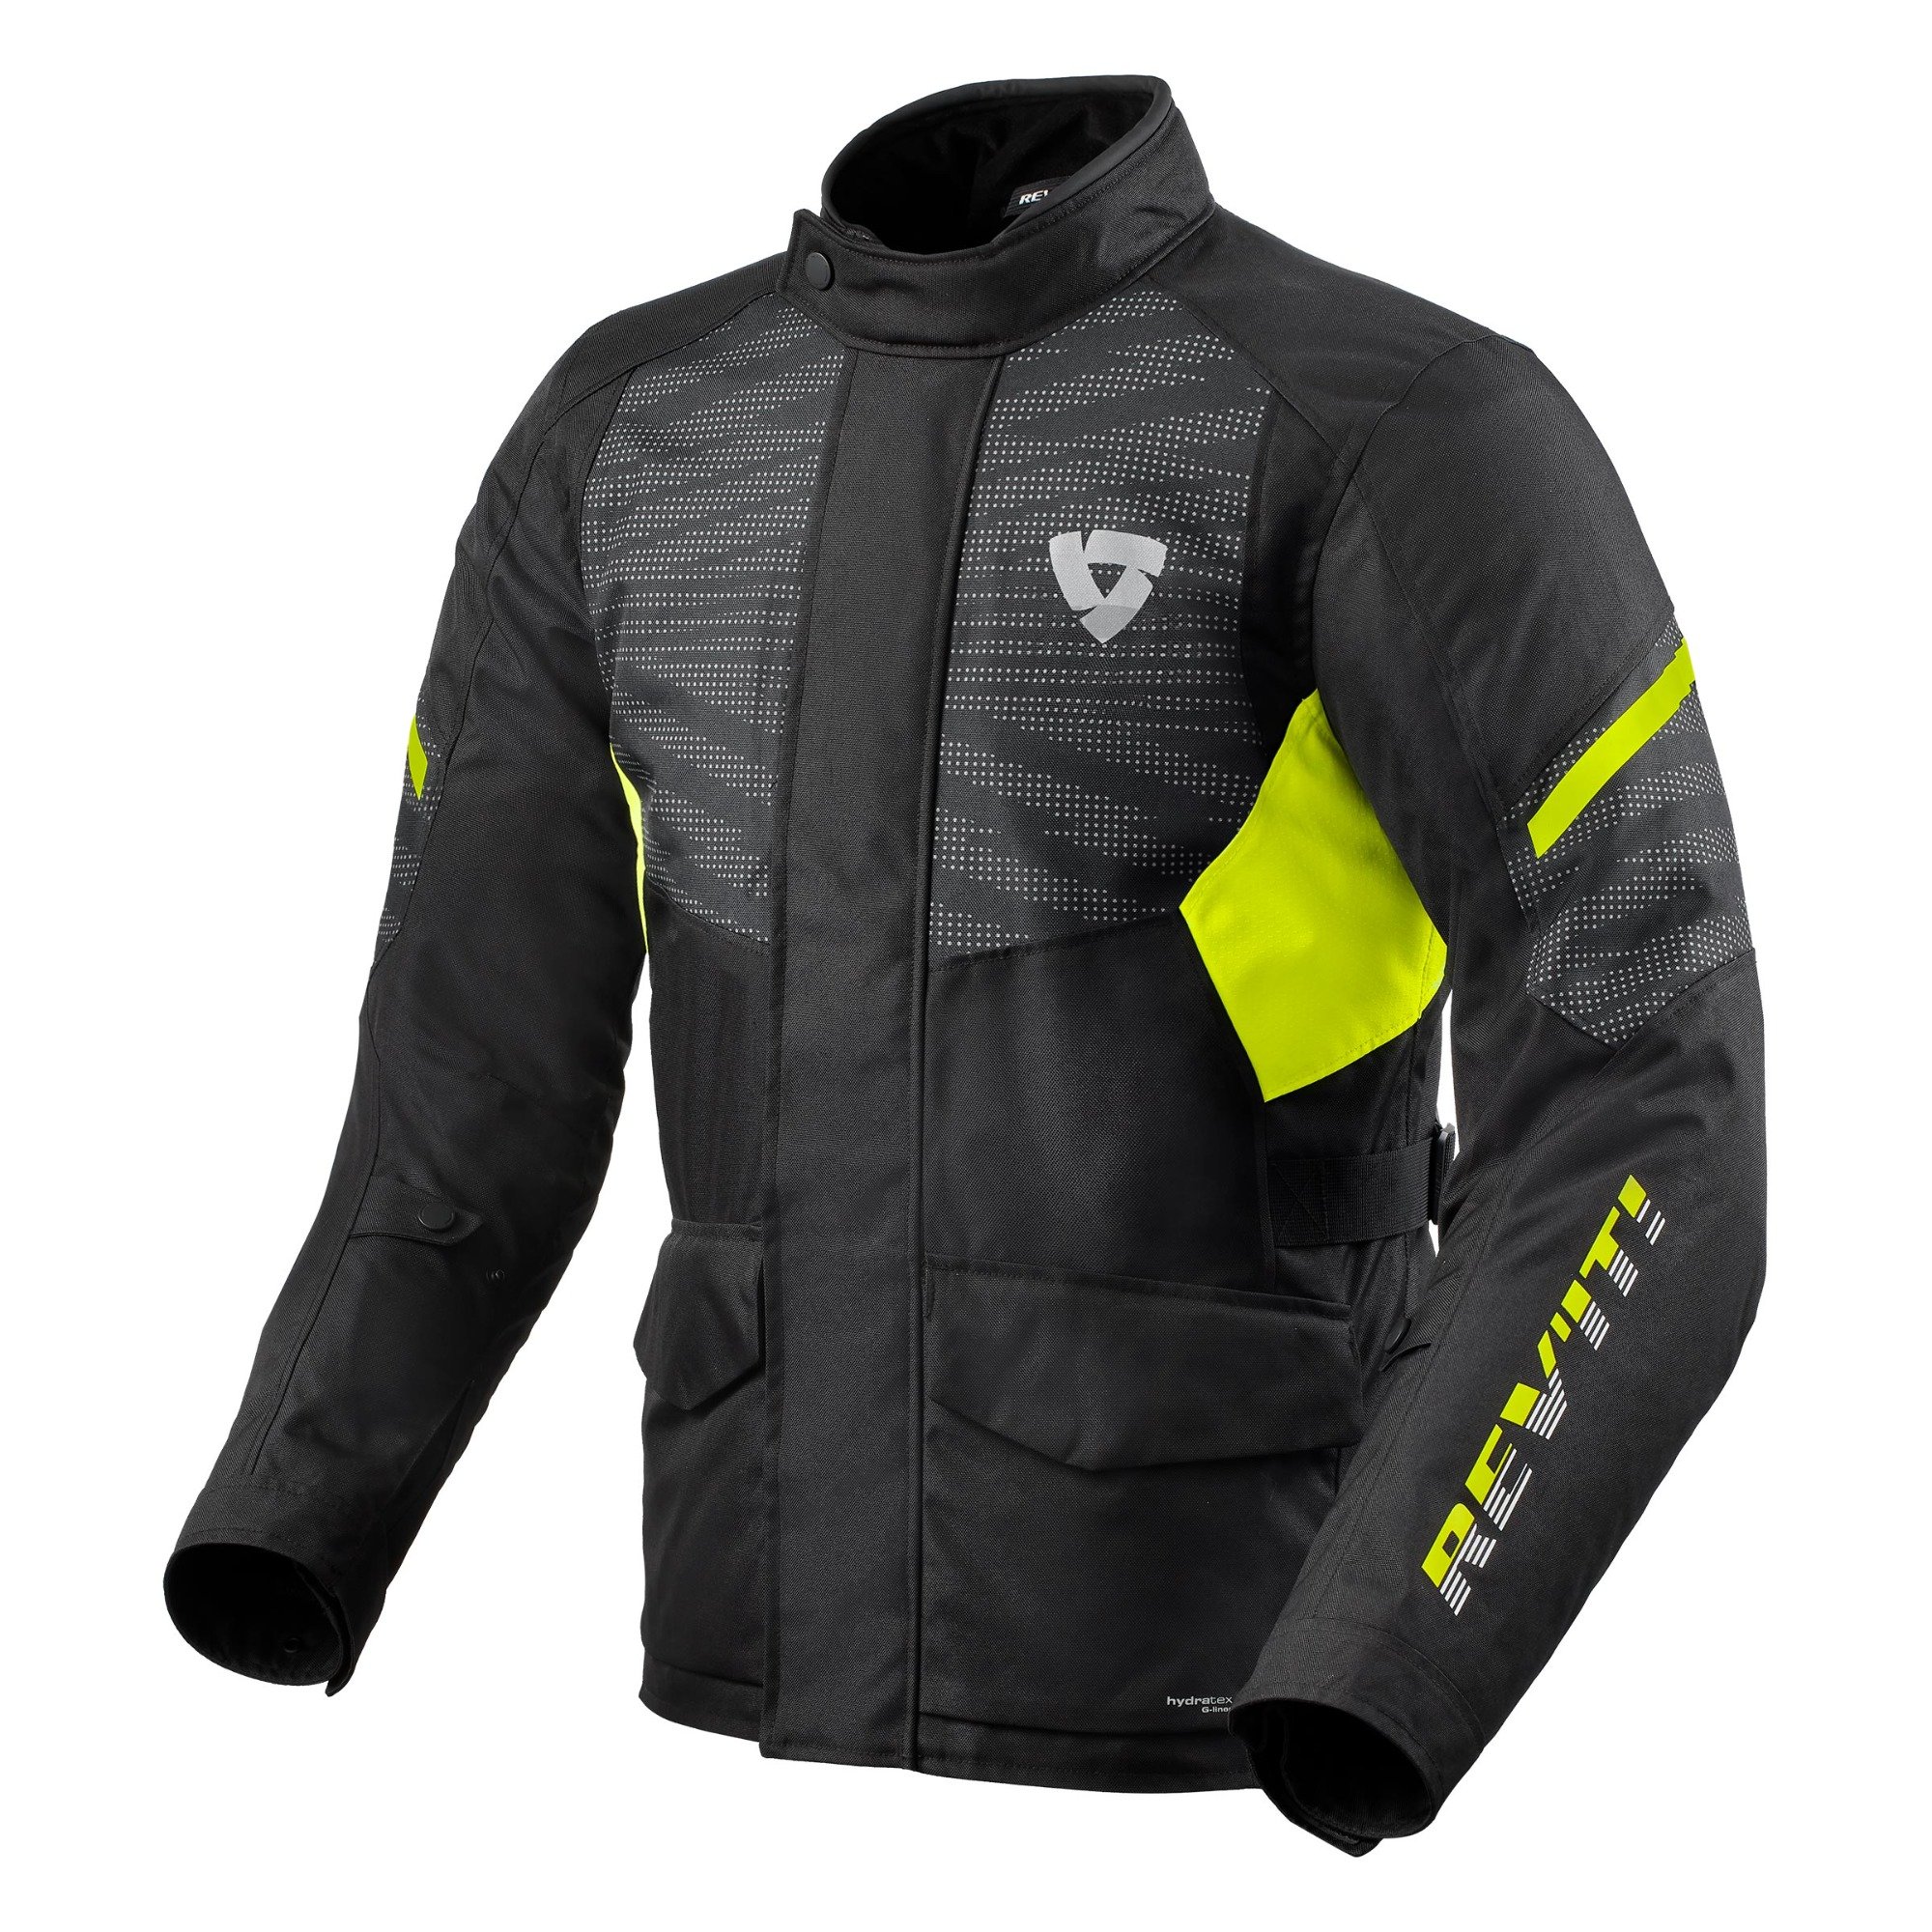 Image of REV'IT! Duke H2O Jacket Black Neon Yellow Size 3XL EN